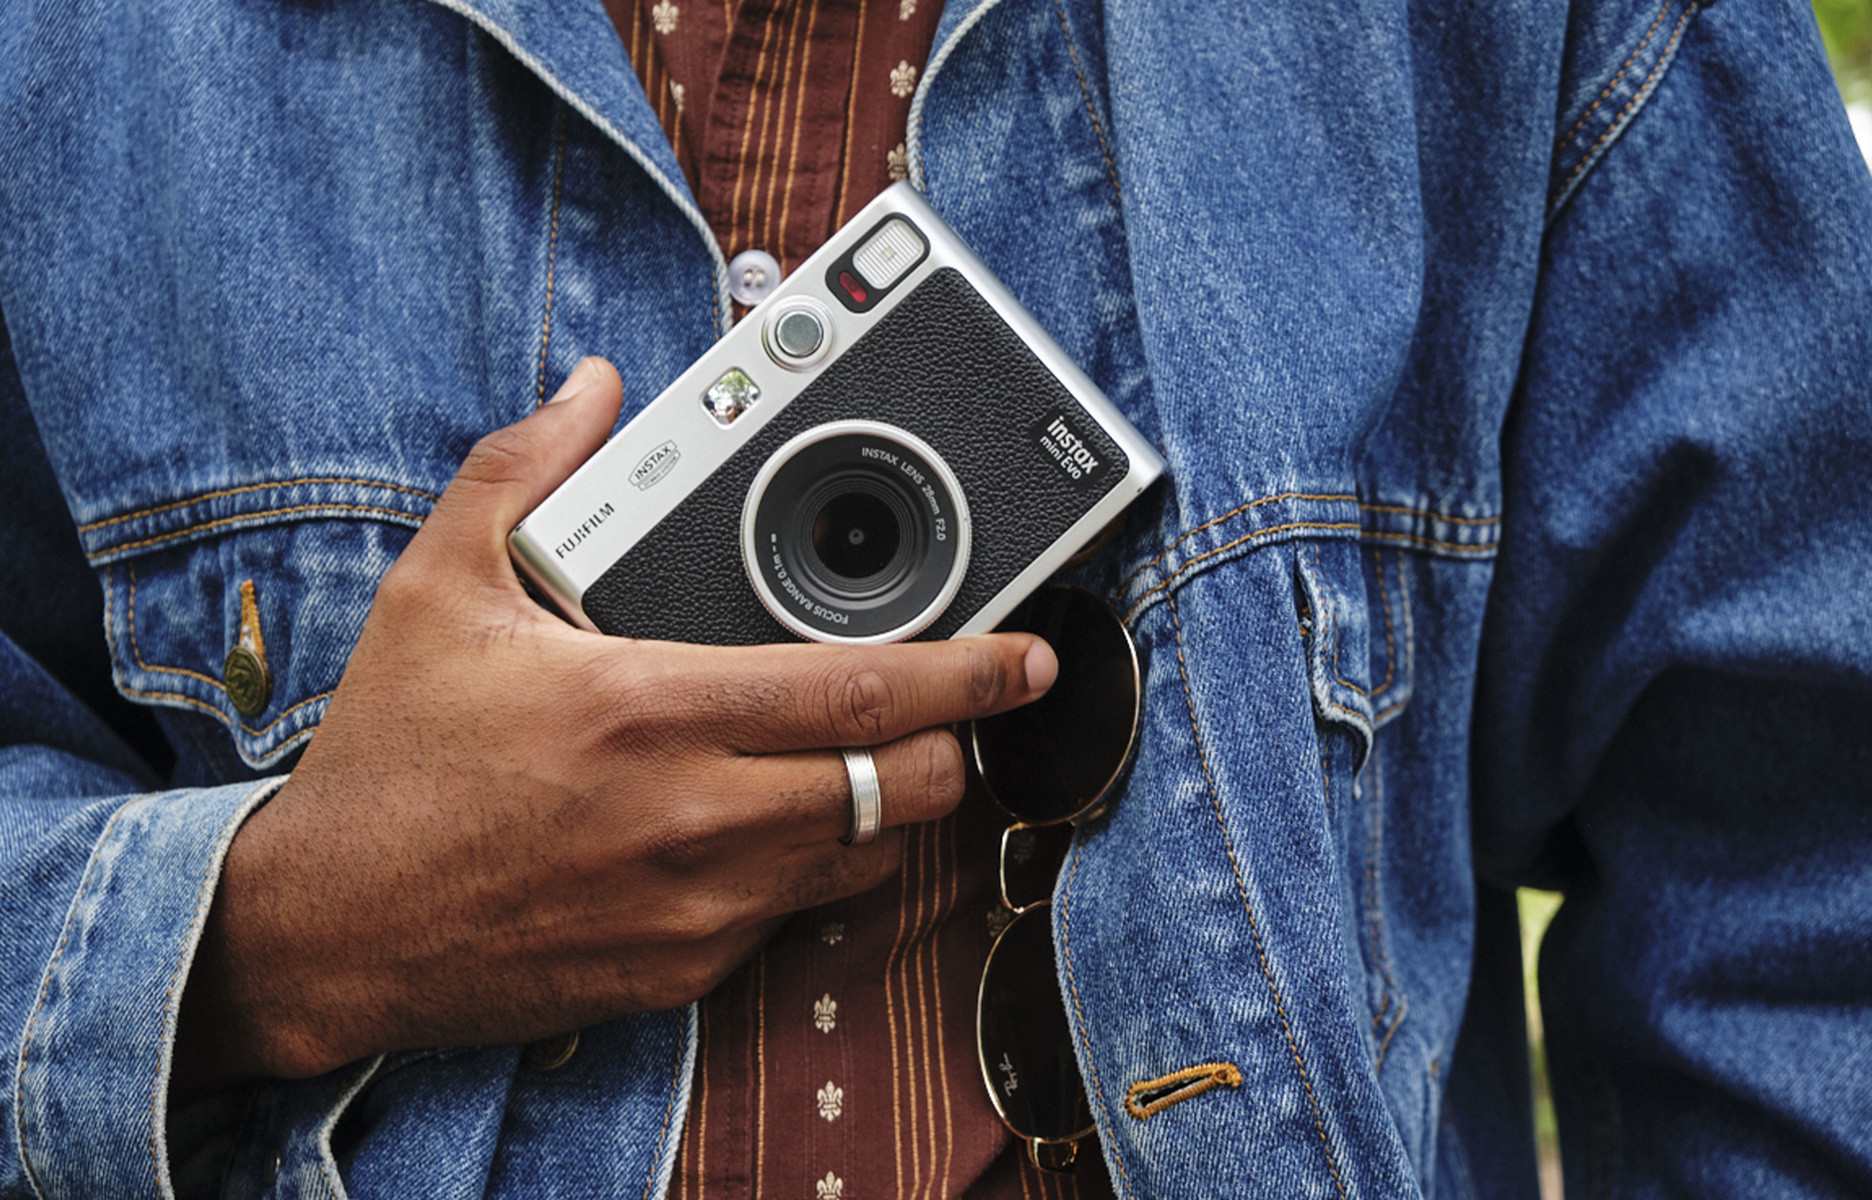 Instax lance un nouvel appareil photo instantané idéal pour vos